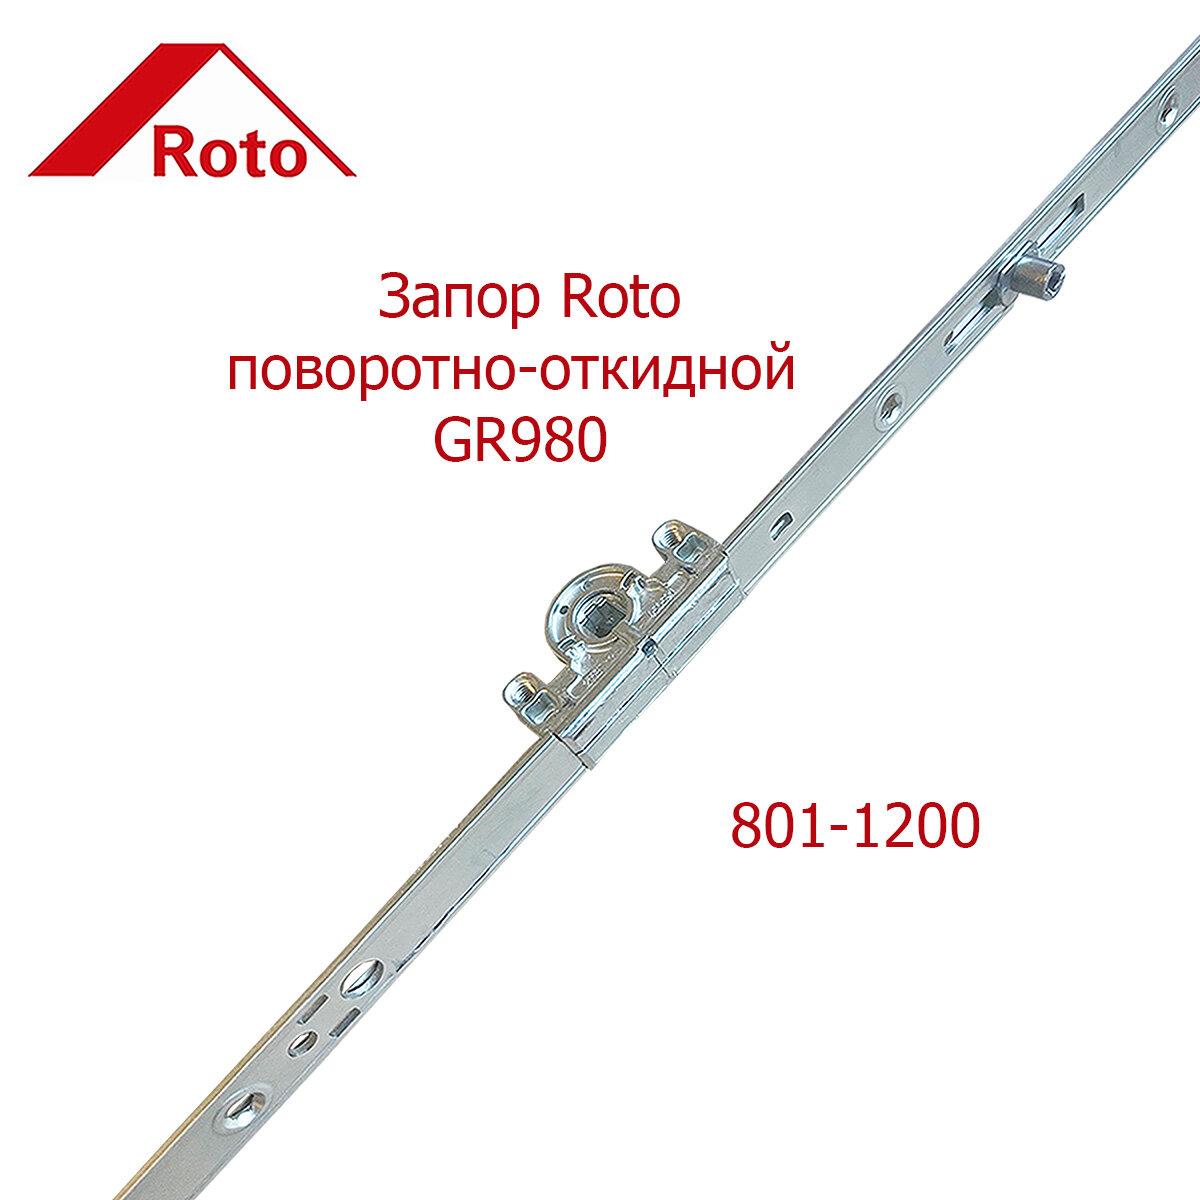 Запор поворотно-откидной Roto GR980 801-1200